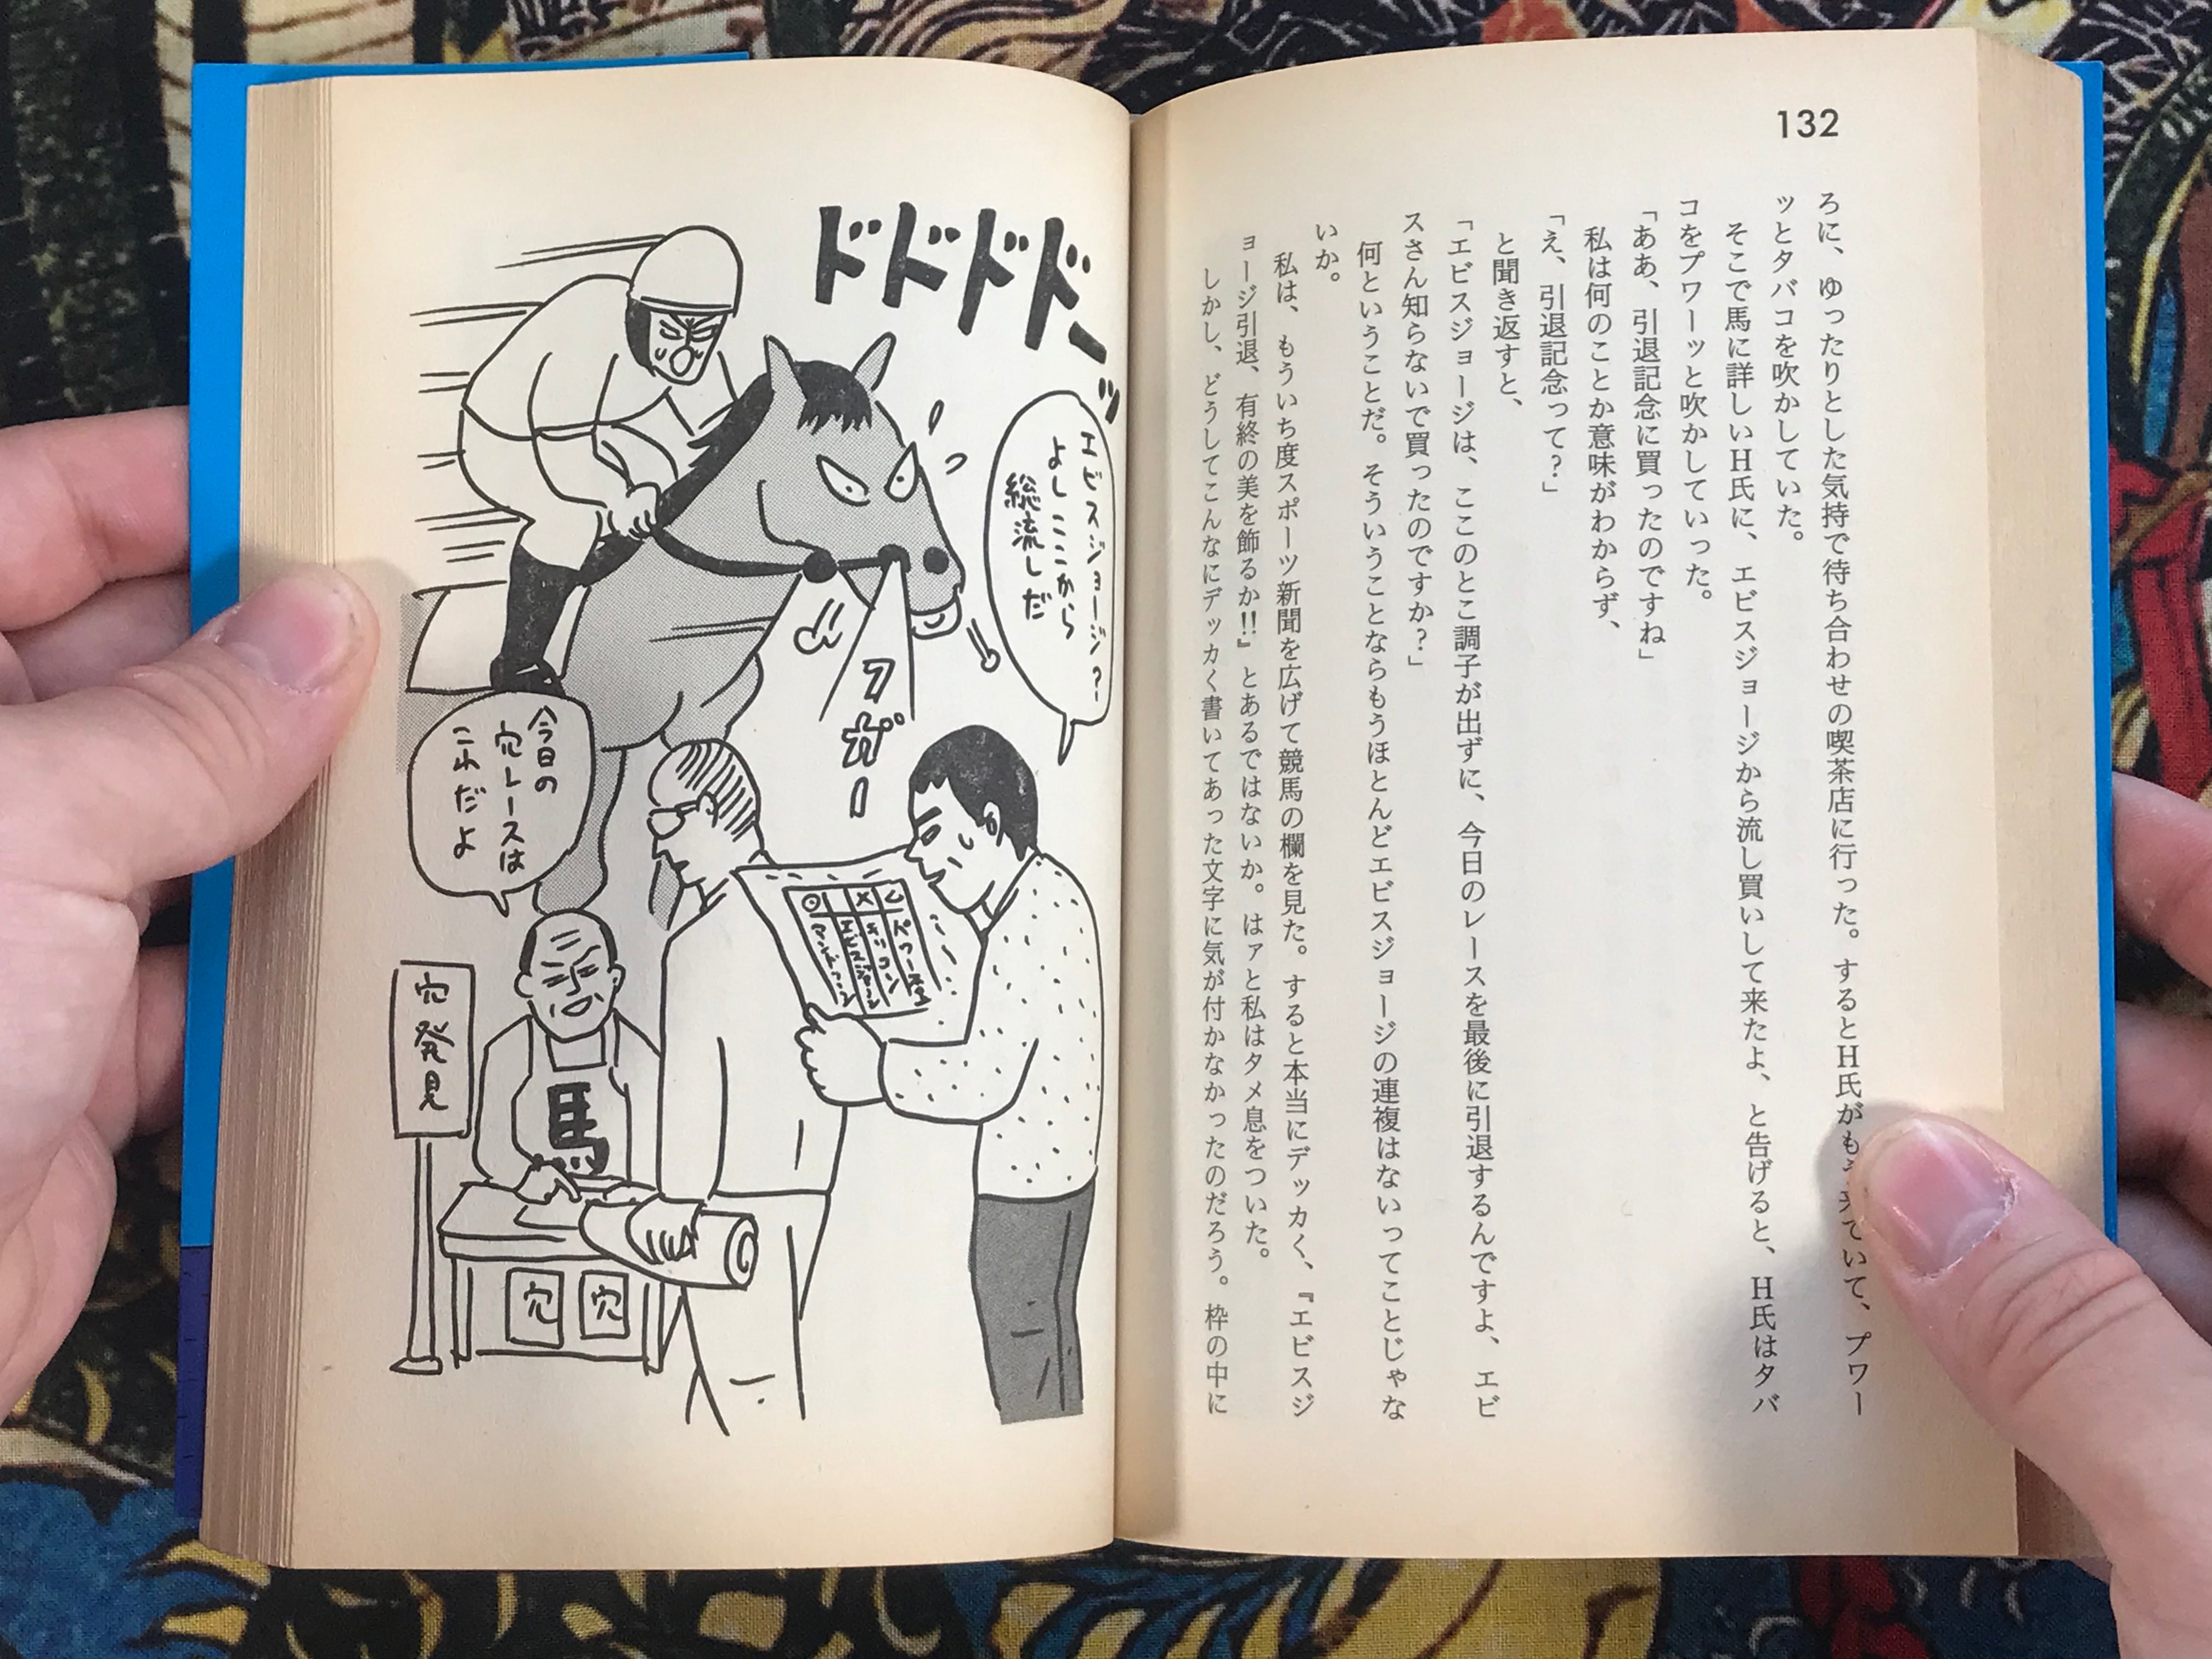 Gambler by Ebisu Yoshikazu (1990)